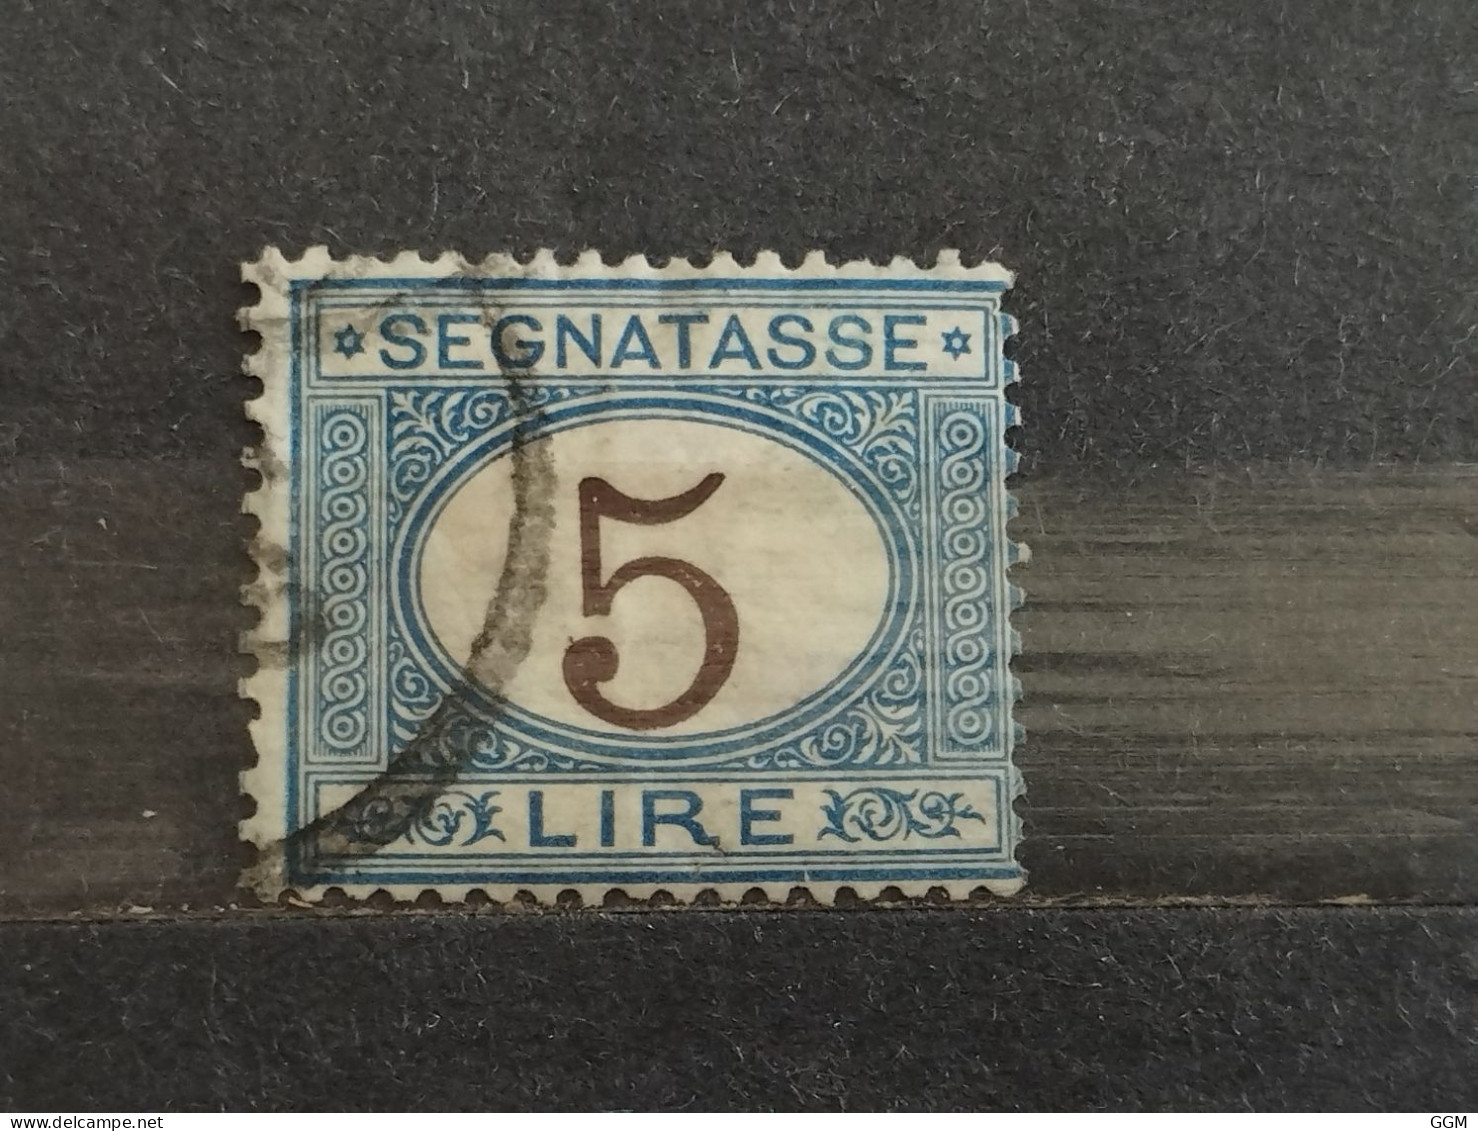 1870/1874. Italia. Segnatasse 5 Lire. Usado. - Used